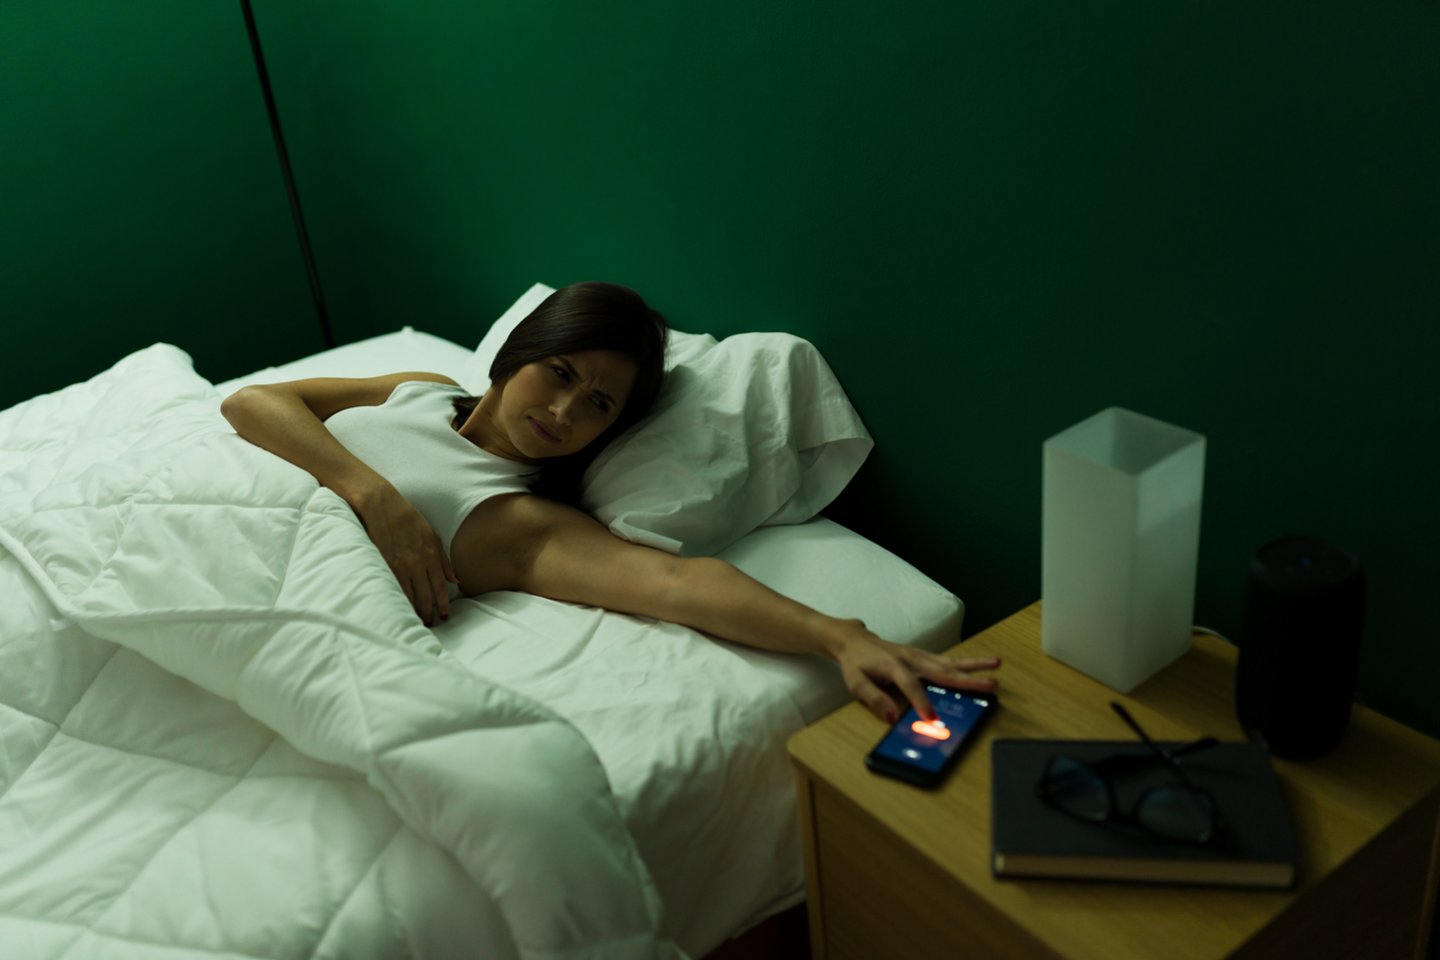  Geras miegas yra būtinas, jei norite palaikyti gerą fizinę bei psichinę sveikatą.<br> 123rf nuotr.